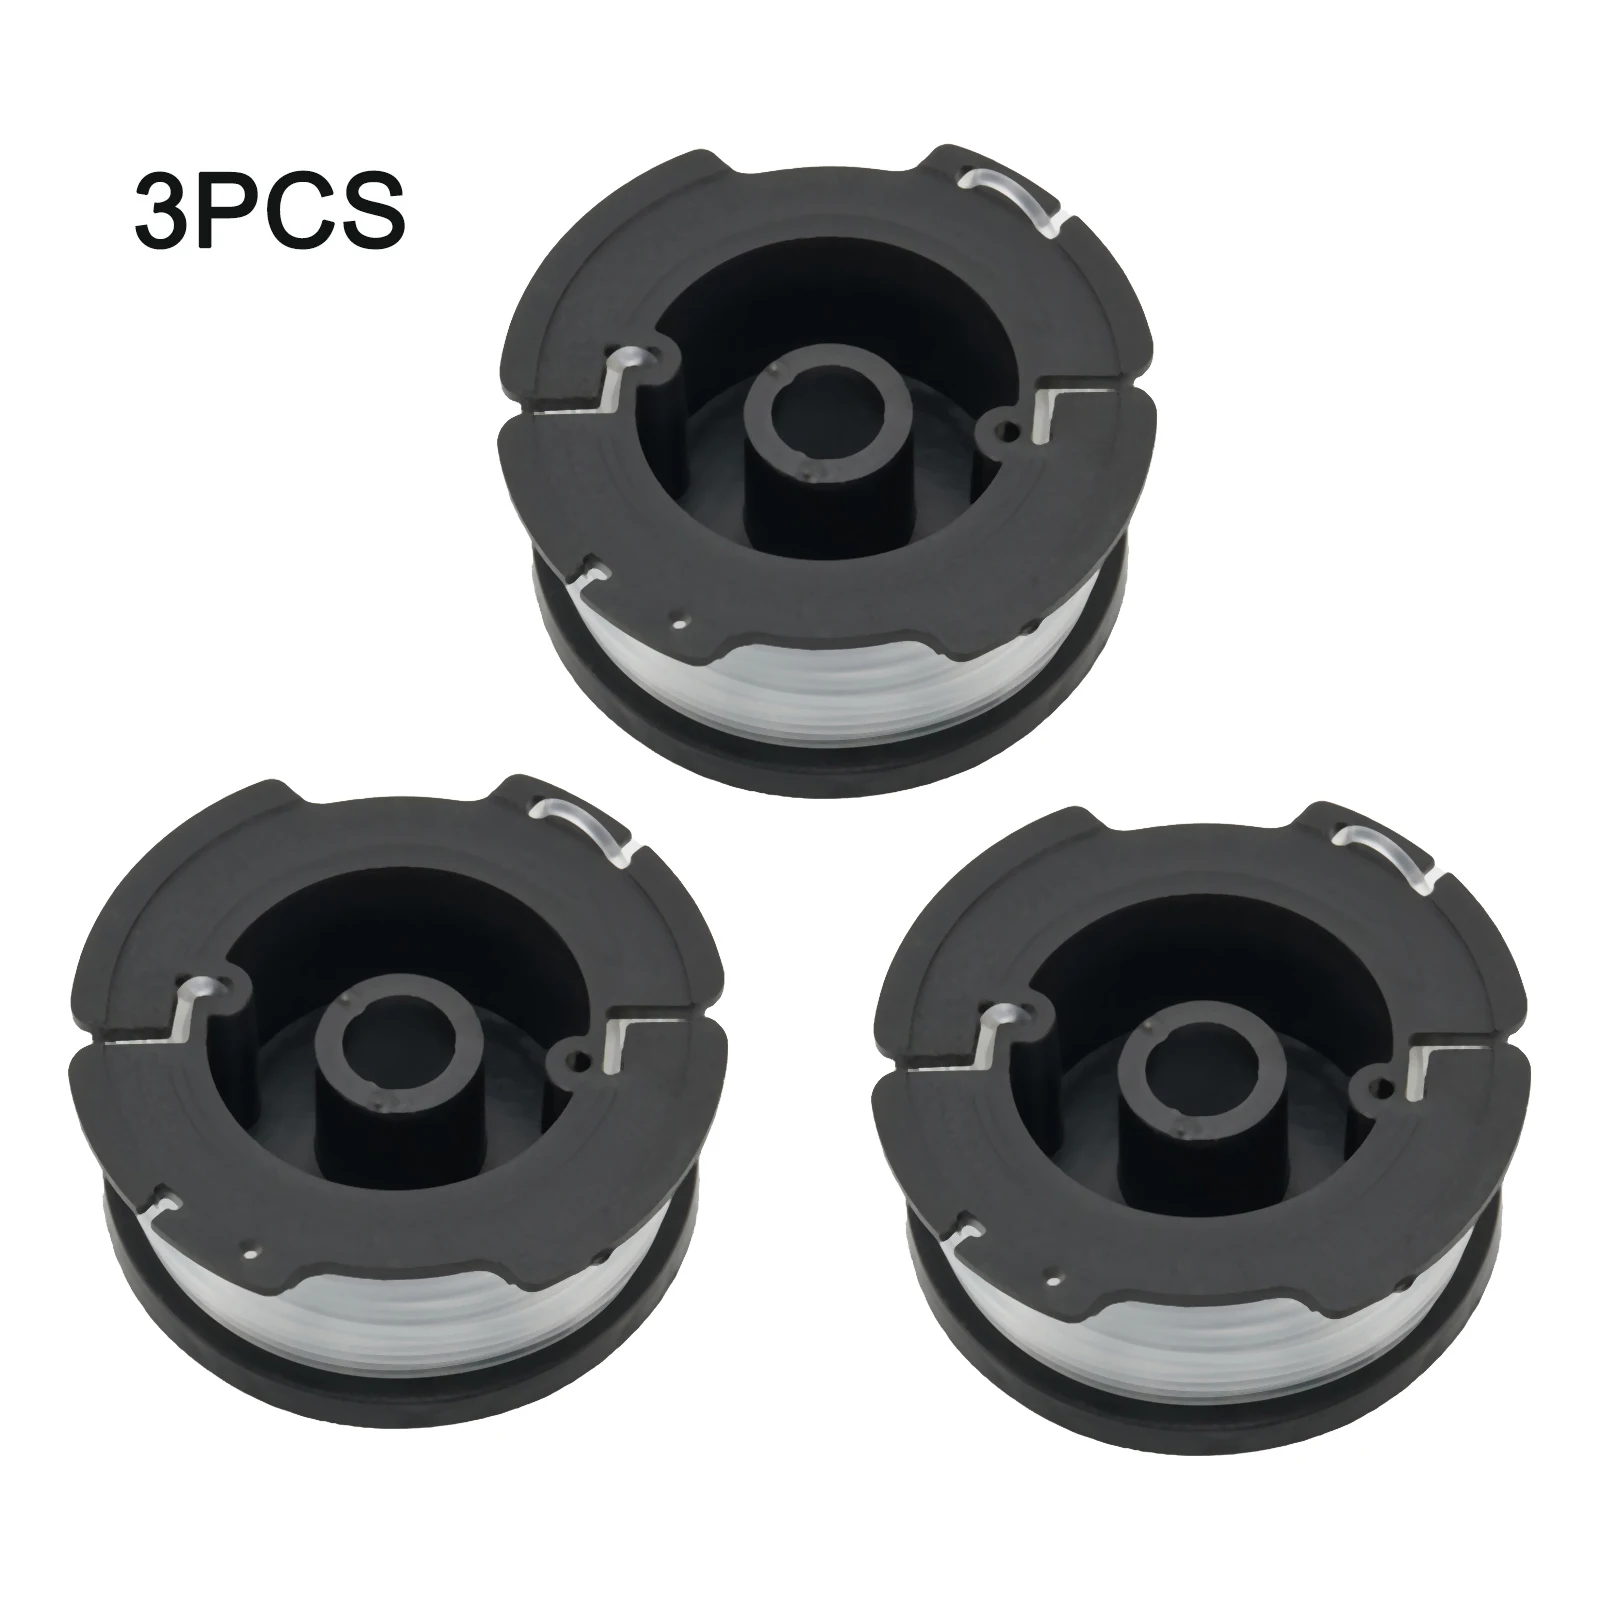 

3Pcs Line Spools For Black+Decker A6485 GL280 GL301 GL425 GL545 GL555 GLC13 Grass String Trimmer Lawn Mower Replacement Kits